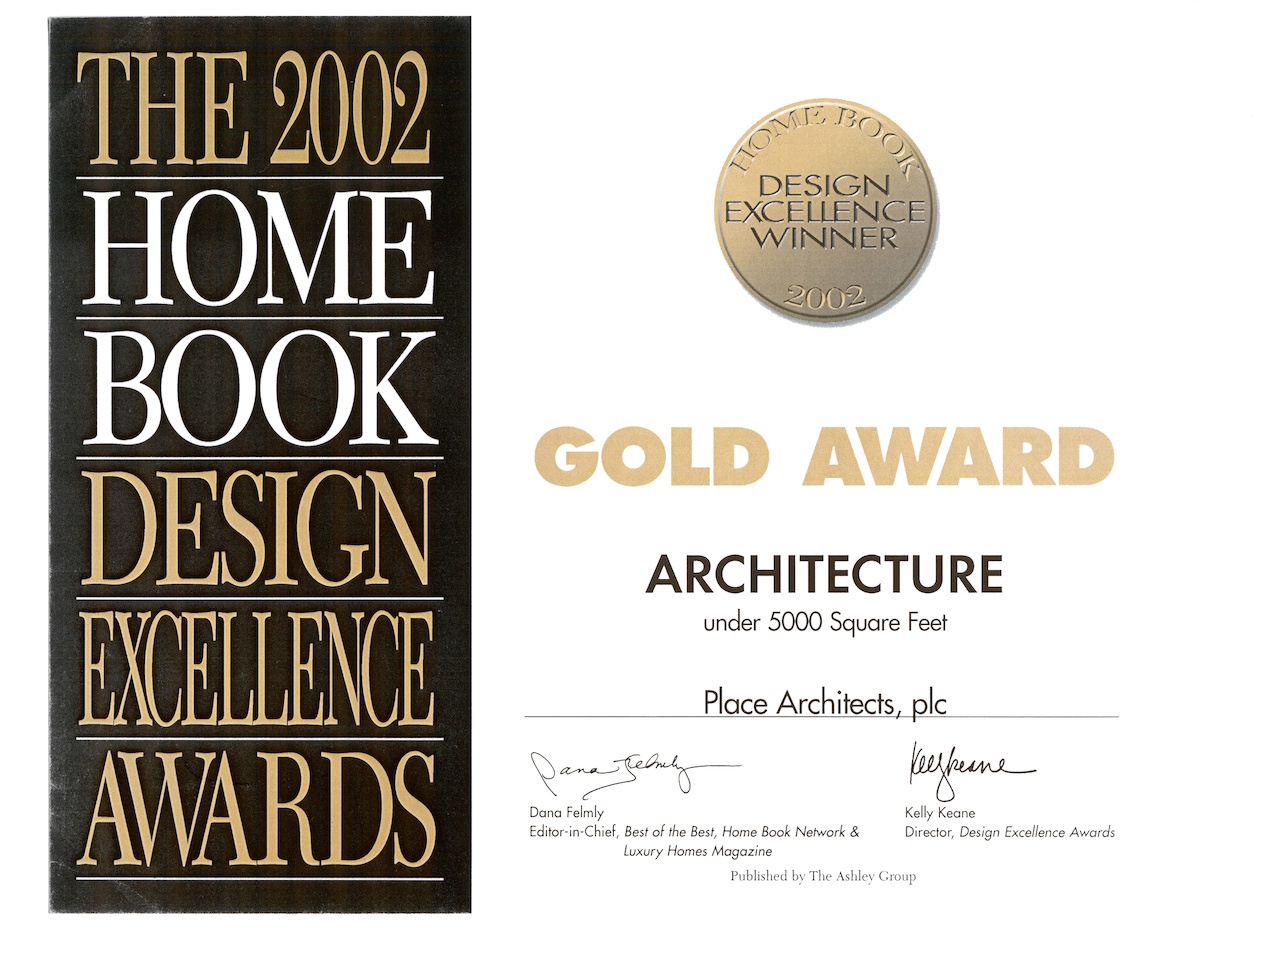 Home Book Design Award